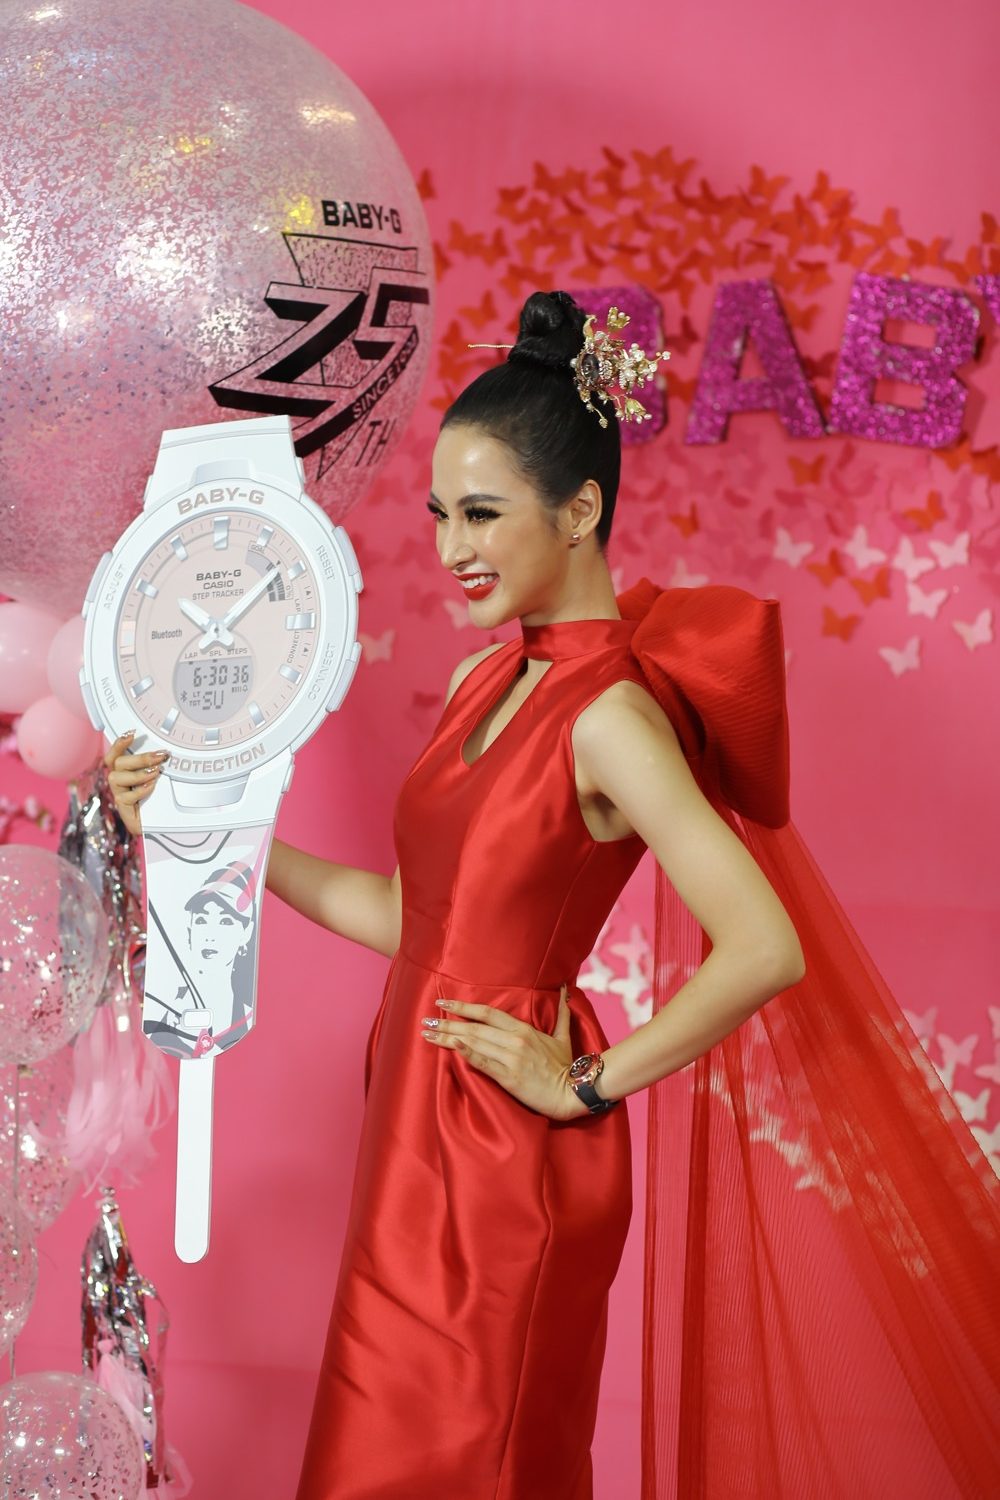 Đại sứ Baby-G Angela Phương Trinh cùng nhiều diễn viên, hot face nổi tiếng gây náo loạn trung tâm thương mại